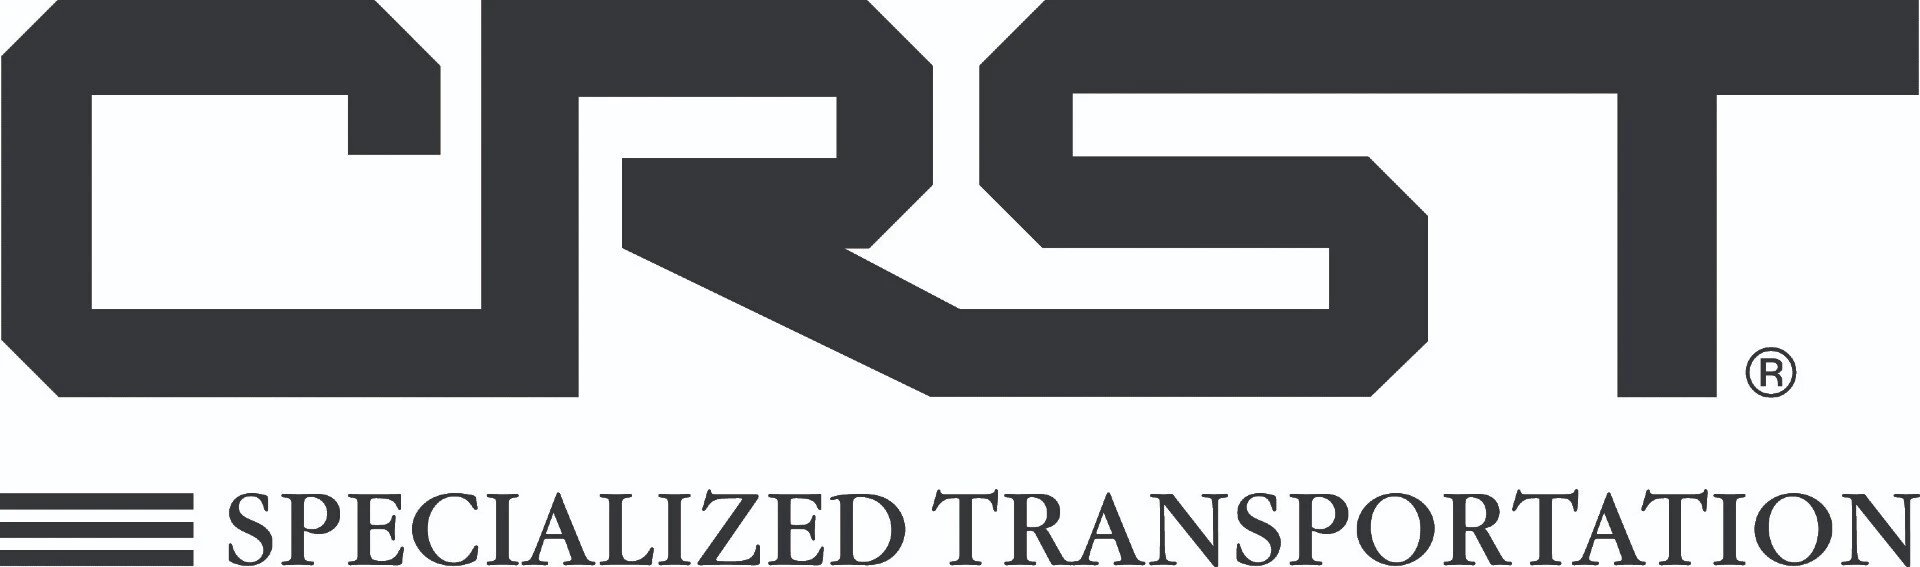 CRST logo